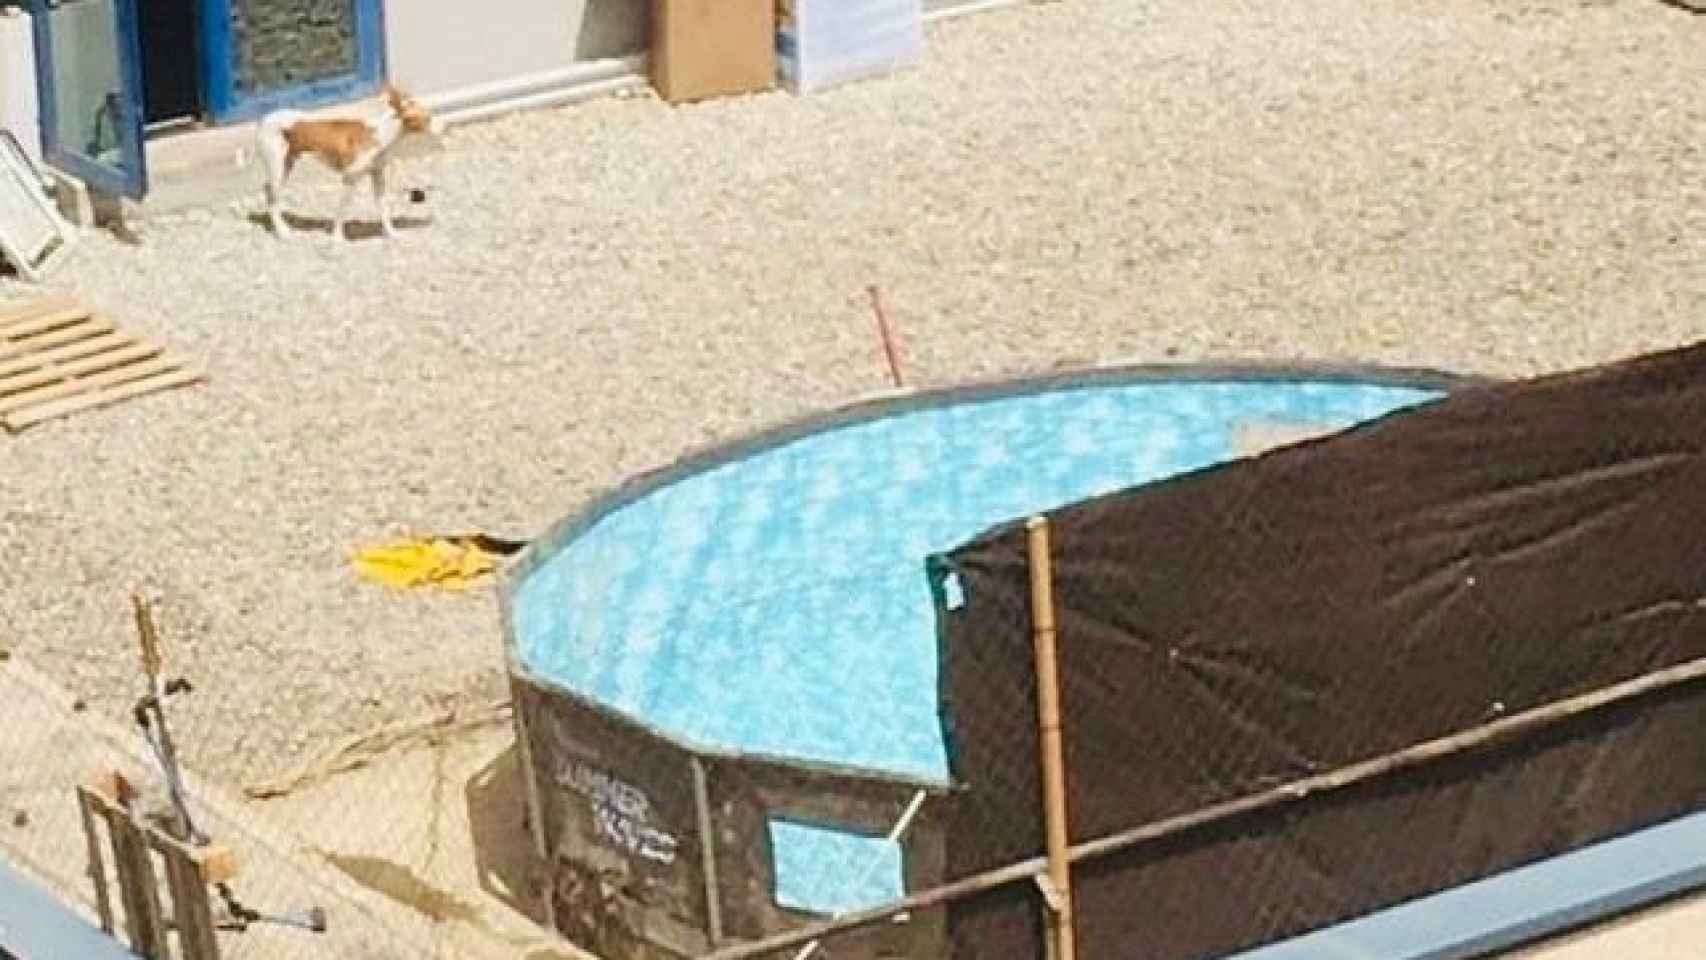 La piscina de los okupas en Badalona / CEDIDA